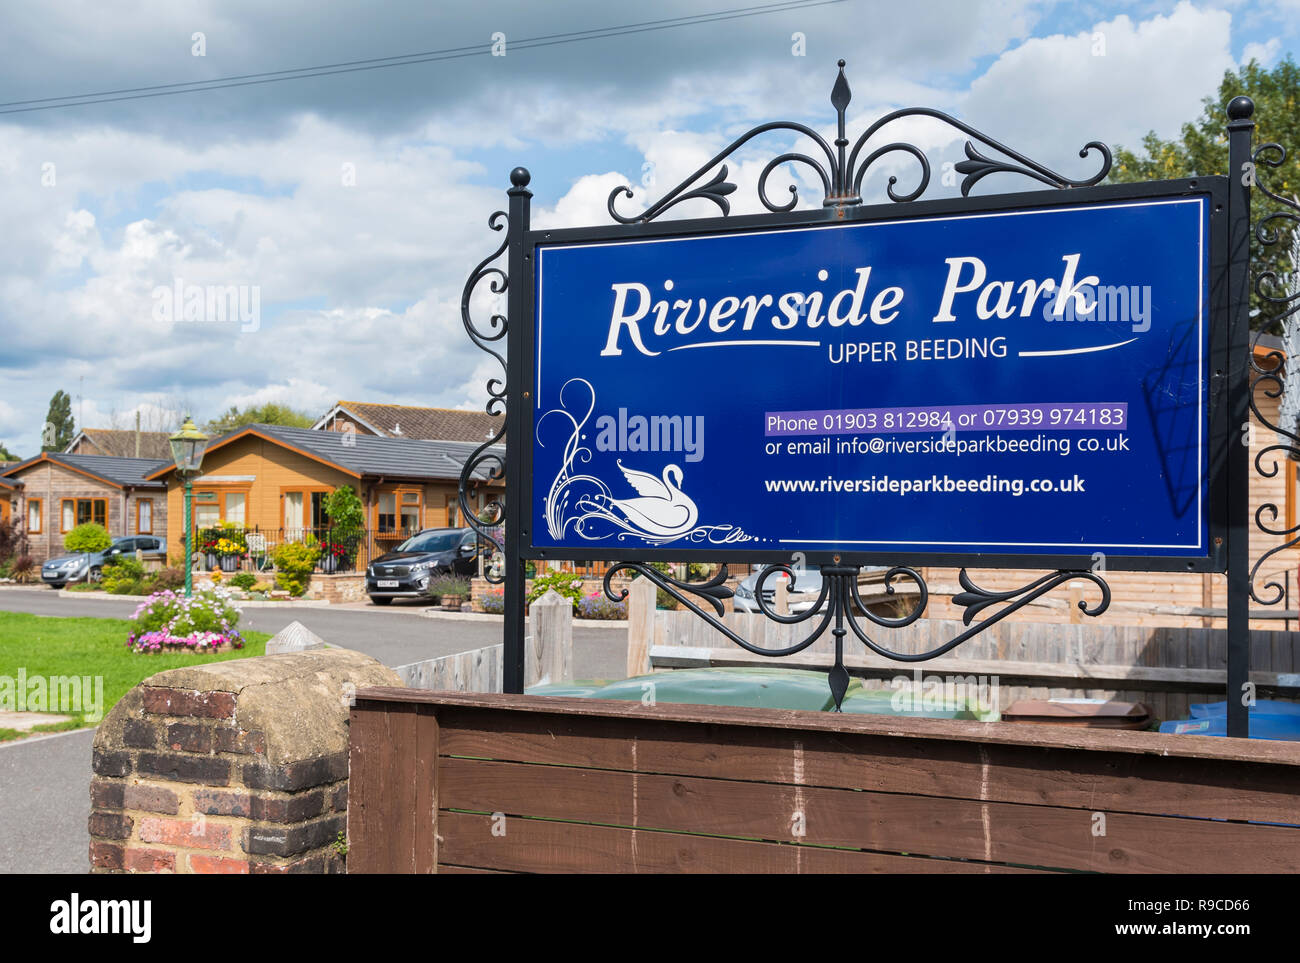 Riverside Park pour l'habitation, maison de vacances et de maisons de retraite dans l'Herm, West Sussex, Angleterre, Royaume-Uni. Banque D'Images